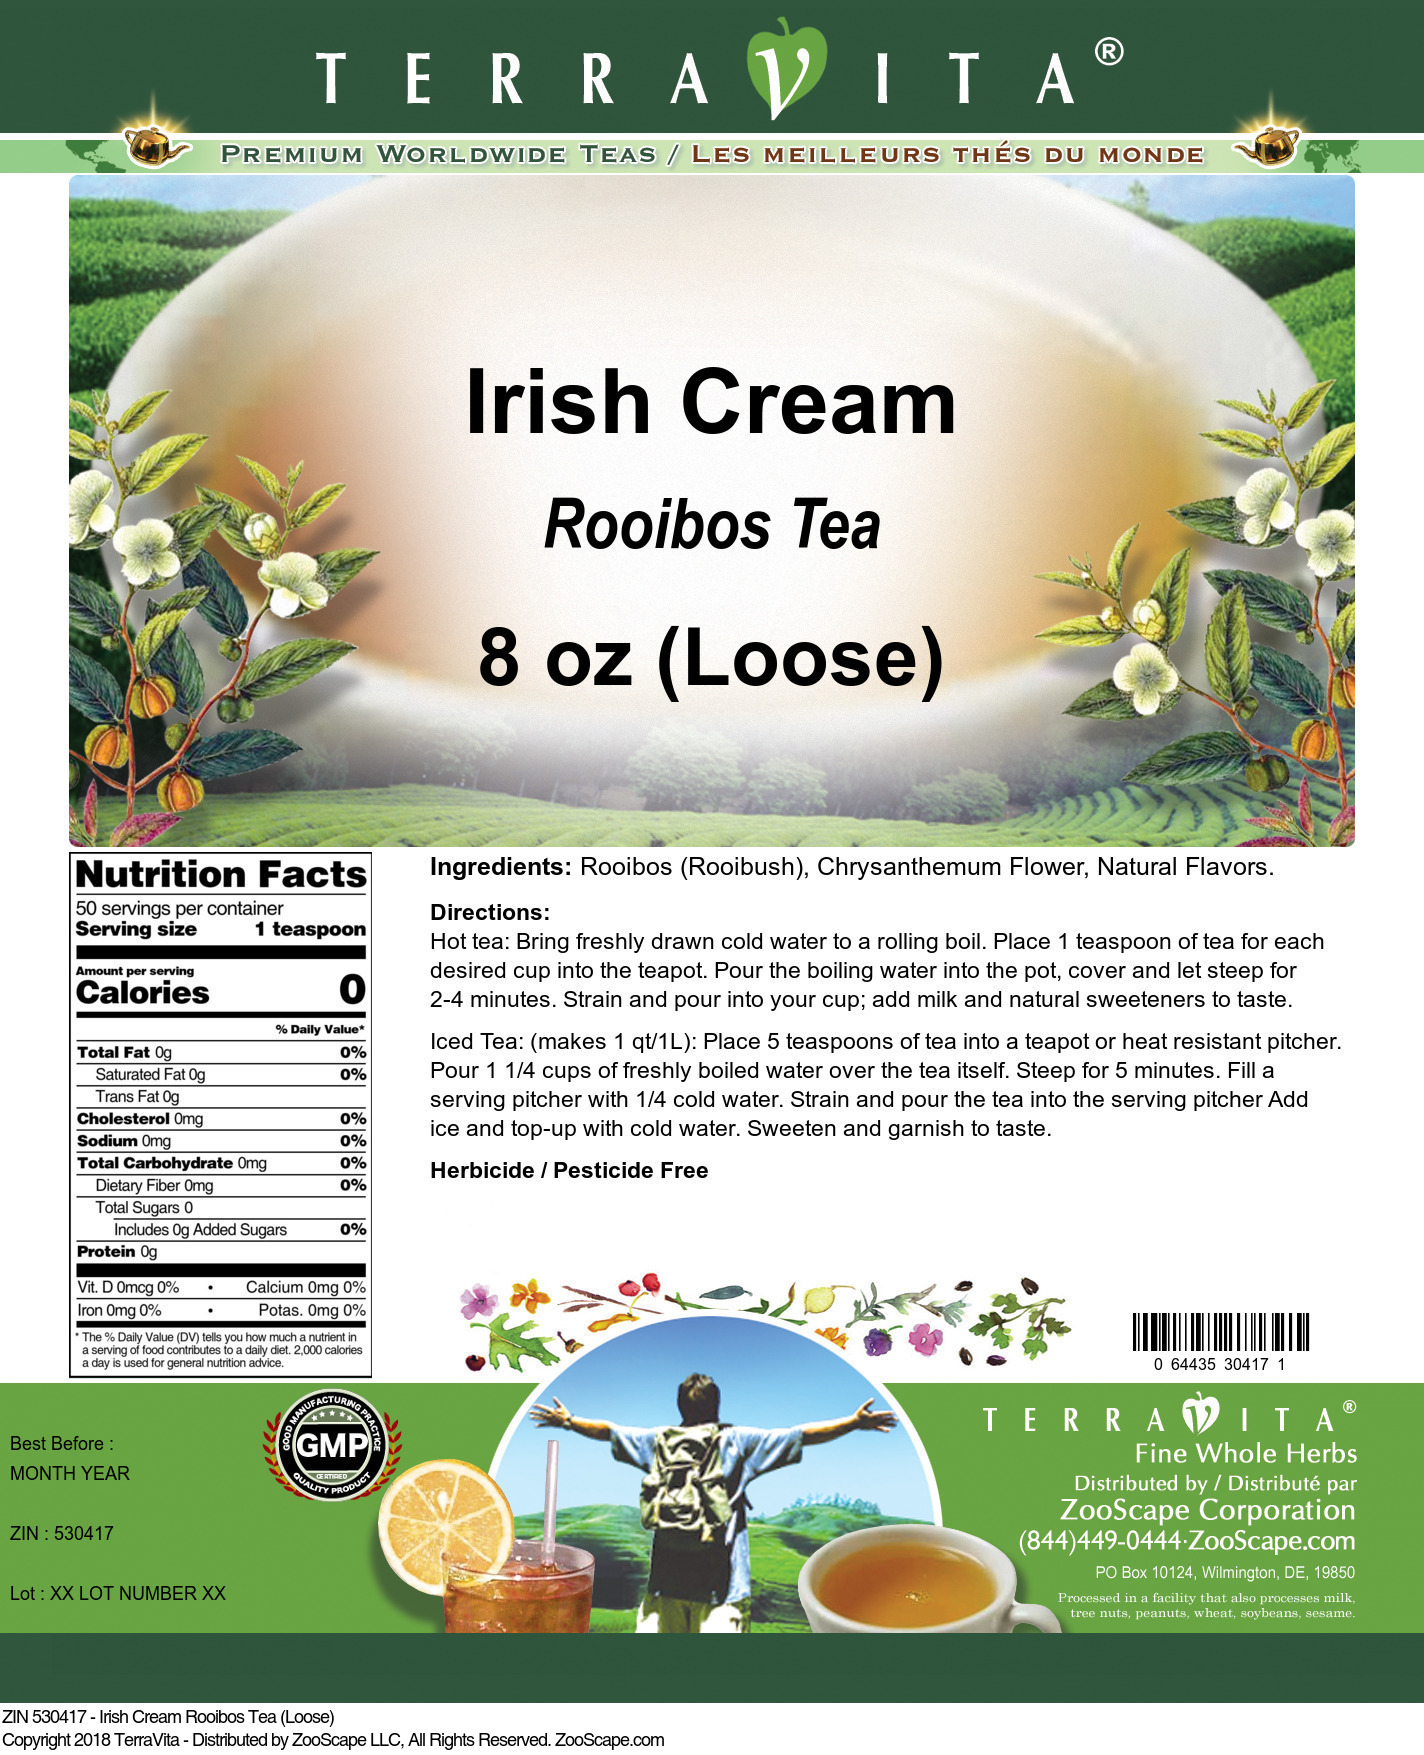 Irish Cream Rooibos Tea (Loose) - Label